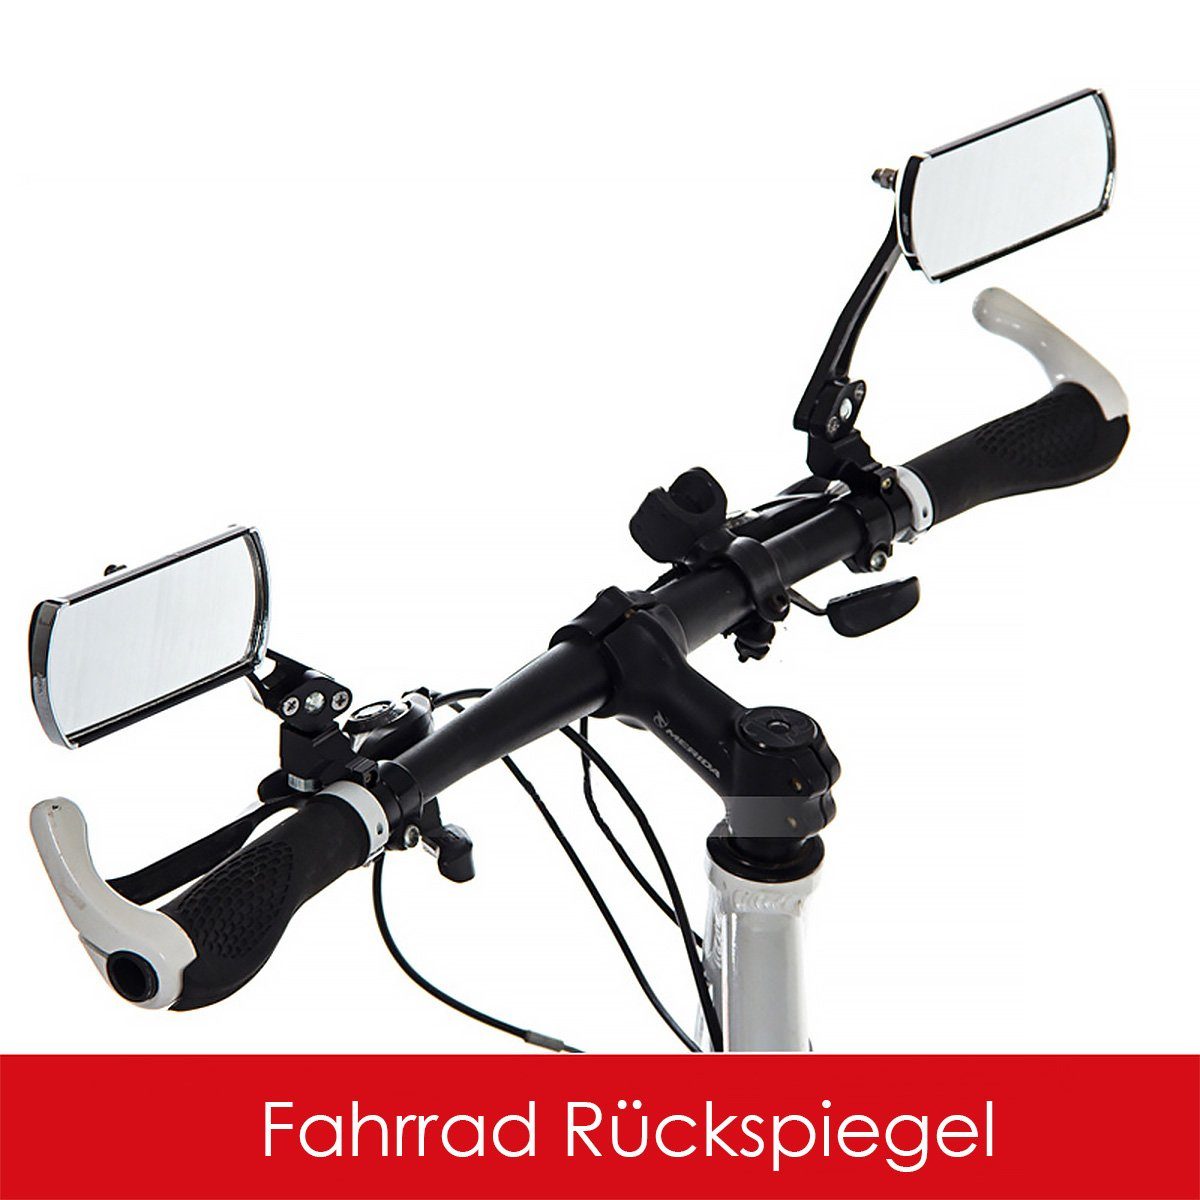 MidGard Fahrradspiegel Fahrrad Rückspiegel-Set f. Links & Rechts Rückspiegel f. Fahrradlenker